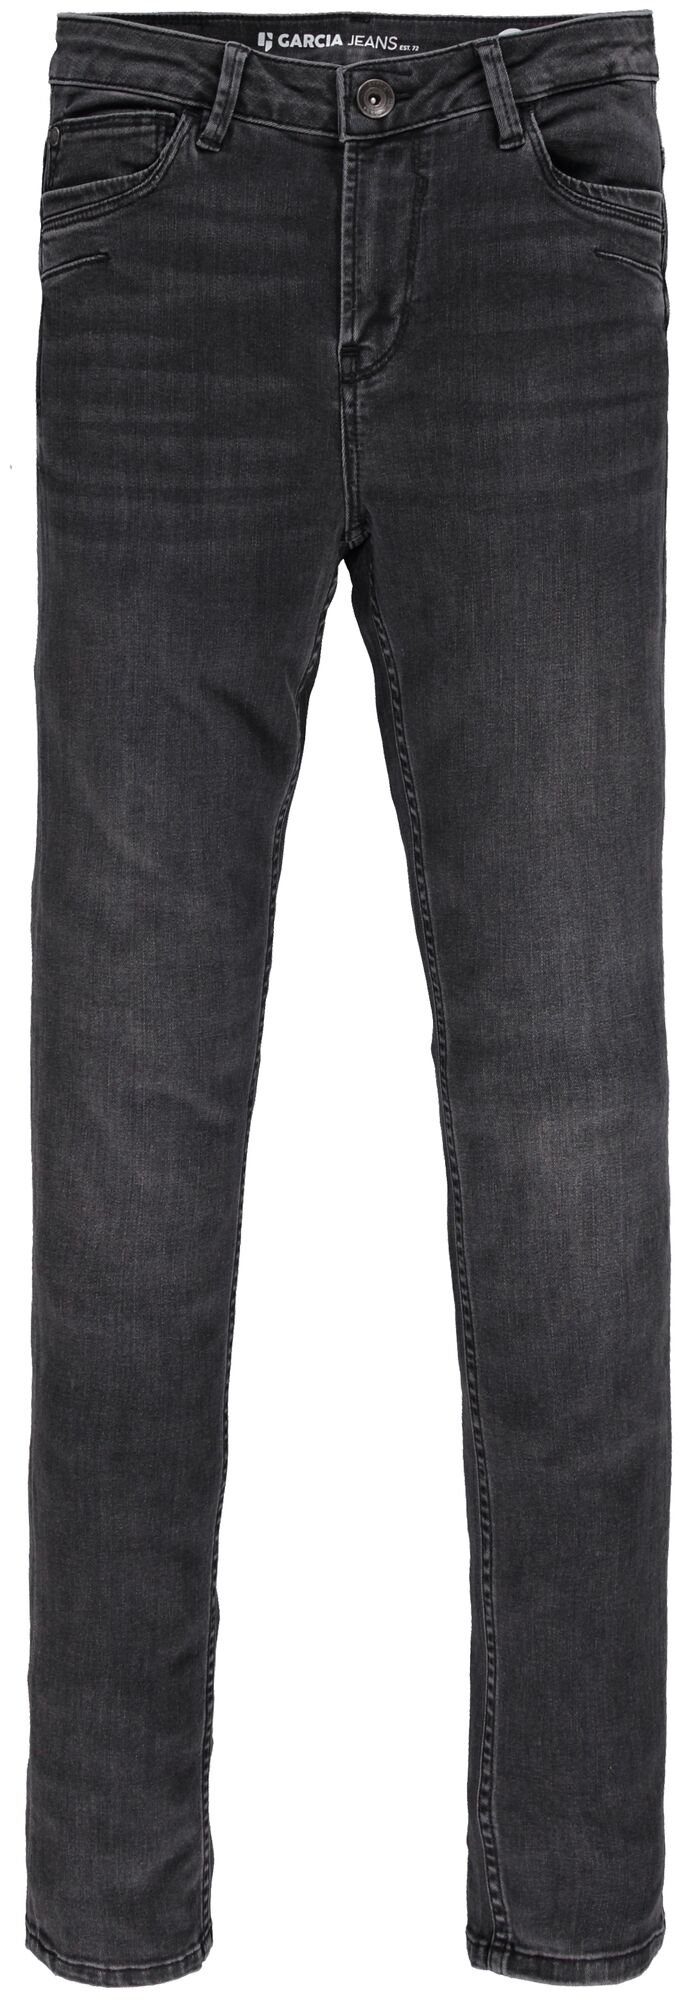 GARCIA JEANS Stretch-Jeans GARCIA CELIA 244.9350 grey used medium